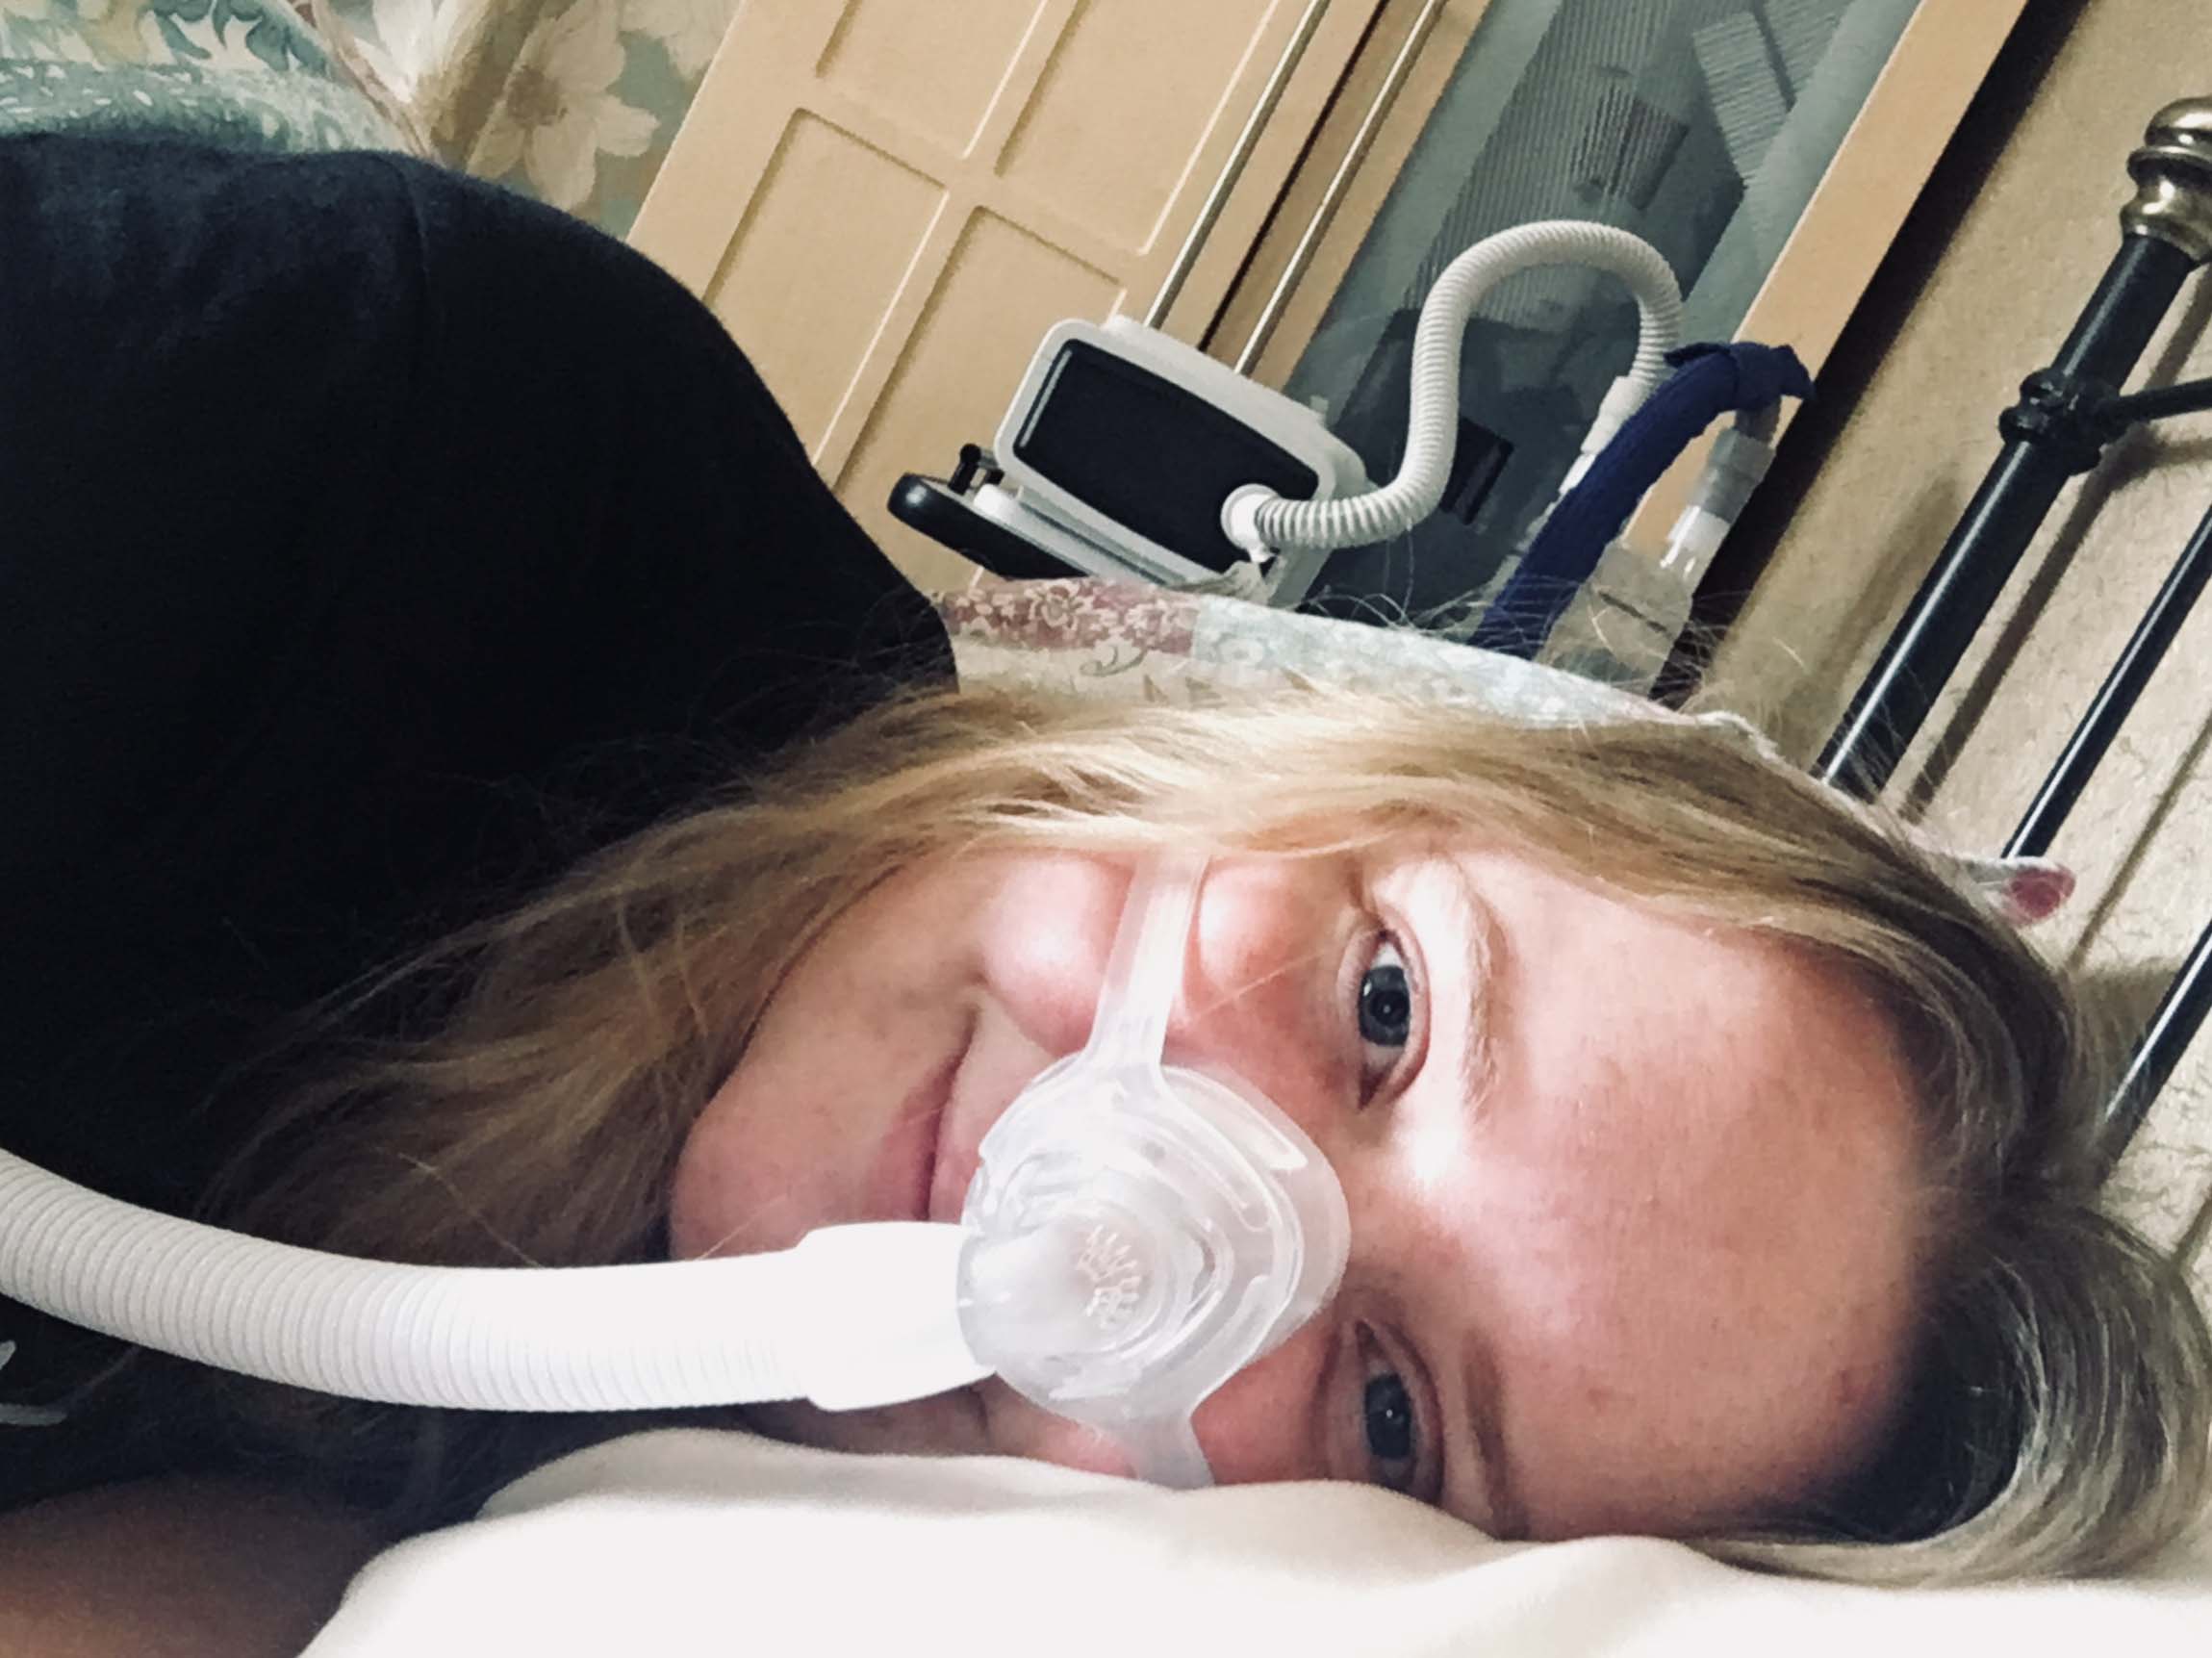 Laura Beattie smiling, wearing an oxygen mask